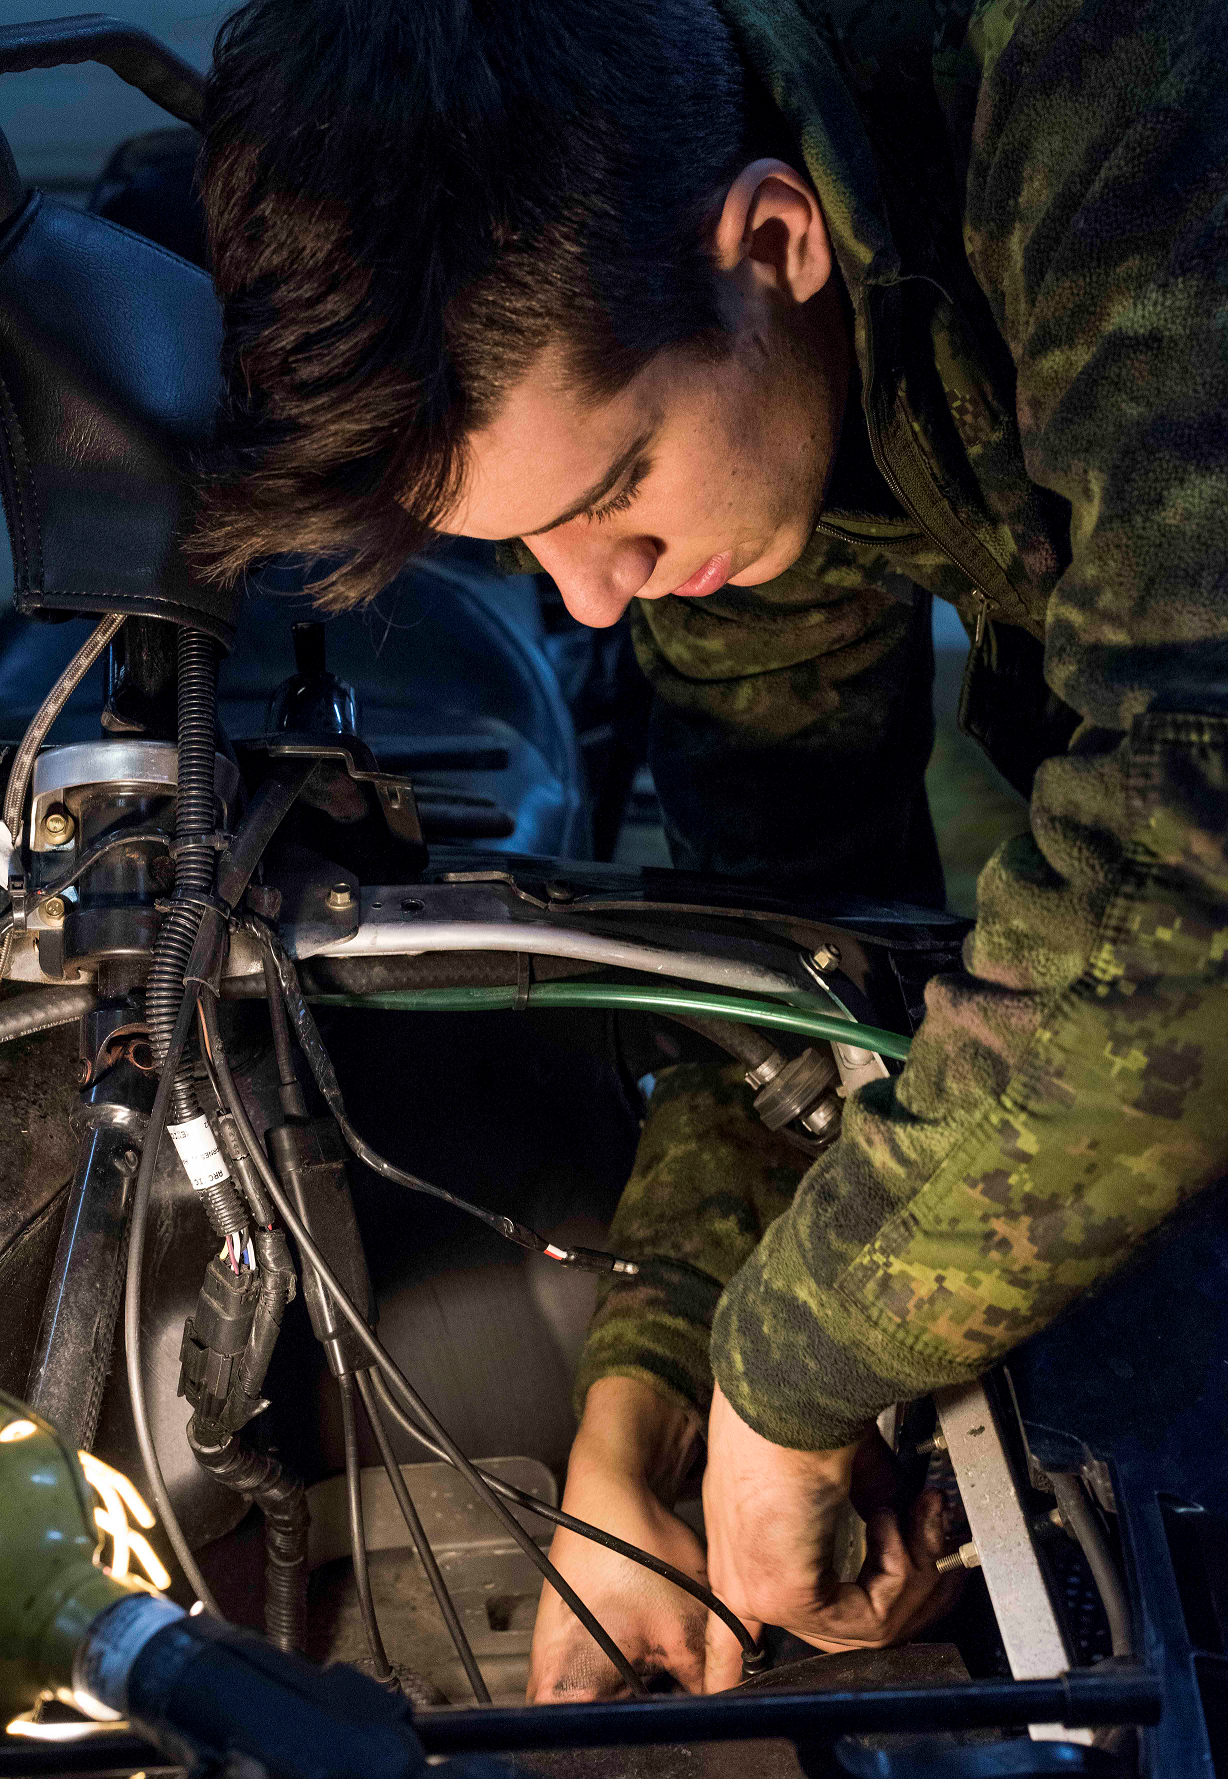 Le caporal Kevin Potvin, technicien de véhicules du 12e Régiment blindé du Canada, remet en place le carburateur d’une motoneige au cours de l’opération NUNALIVUT 2017, à Hall Beach, au Nunavut, le 27 février 2017. (Photo : Sgt Jean-François Lauzé, Technicien en imagerie de la Force opérationnelle)